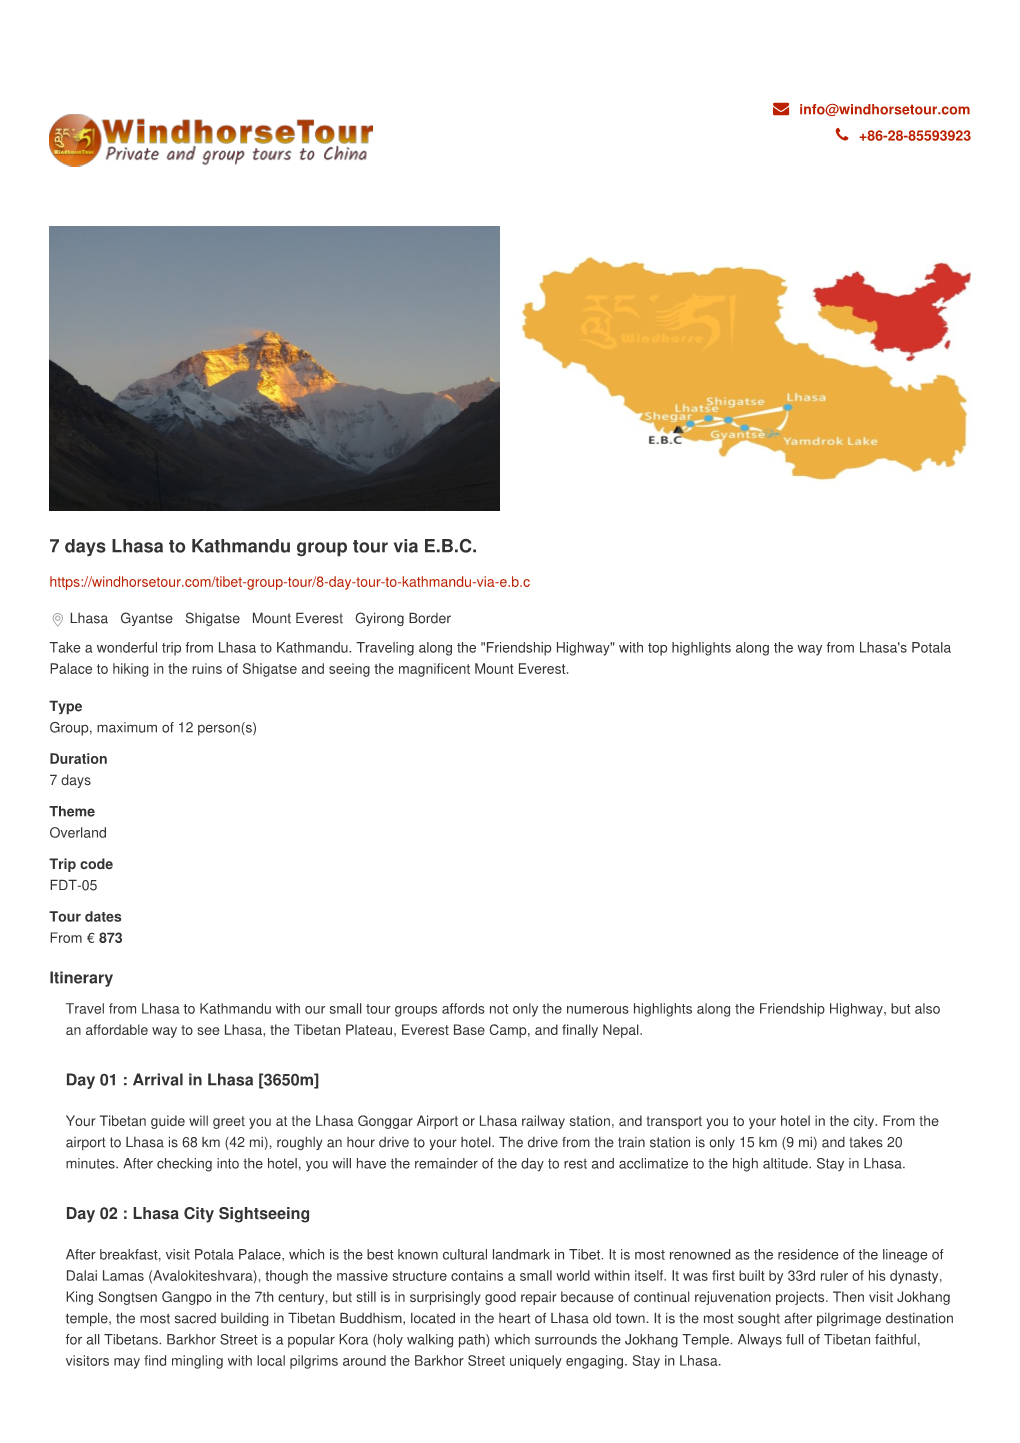 7 Days Lhasa to Kathmandu Group Tour Via E.B.C